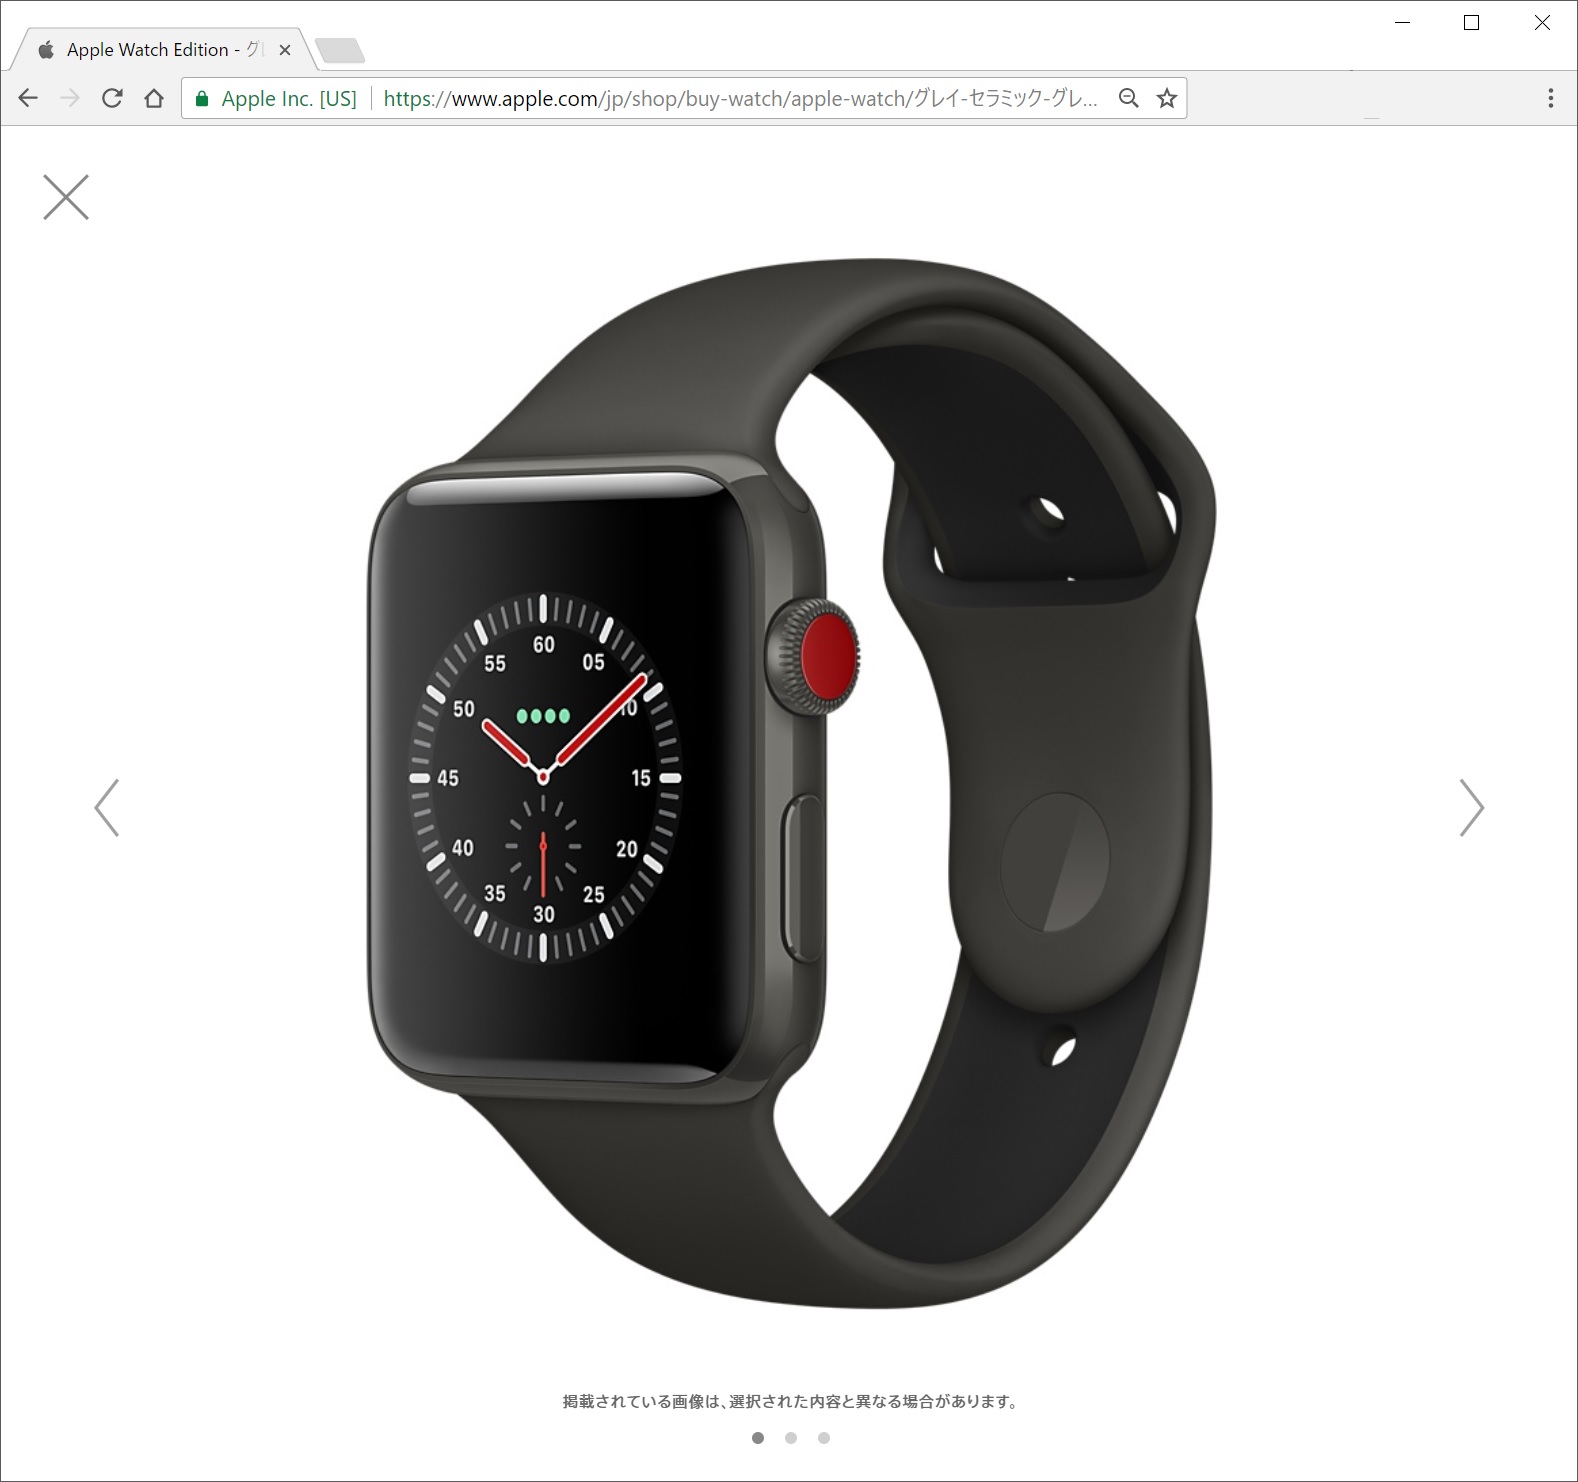 Apple Watch Series3のデモ機、ヤバイ！！高級モデルが欲しくなった。アルミニウムモデルは安っぽい・・・。（追記あり